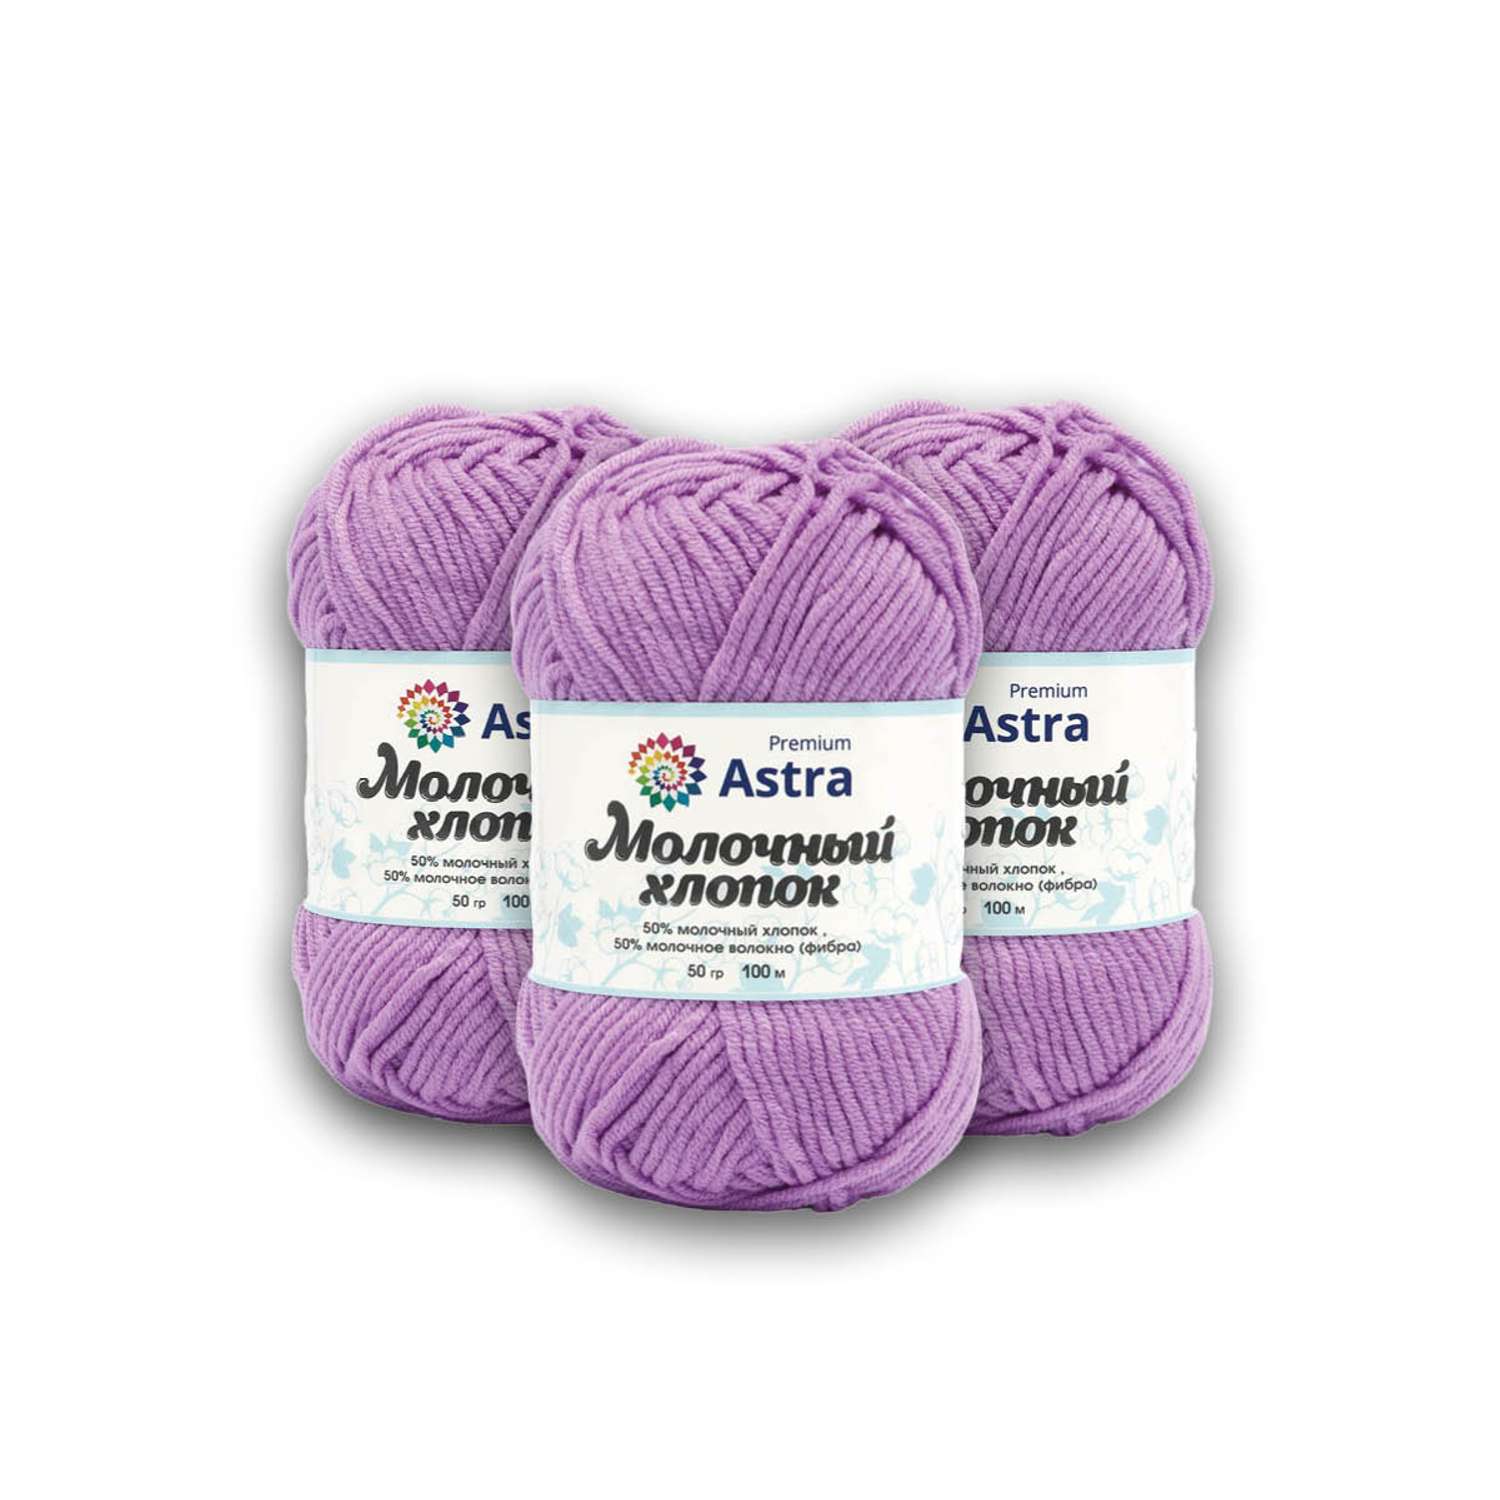 Пряжа для вязания Astra Premium milk cotton хлопок акрил 50 гр 100 м 65 сиреневый 3 мотка - фото 9